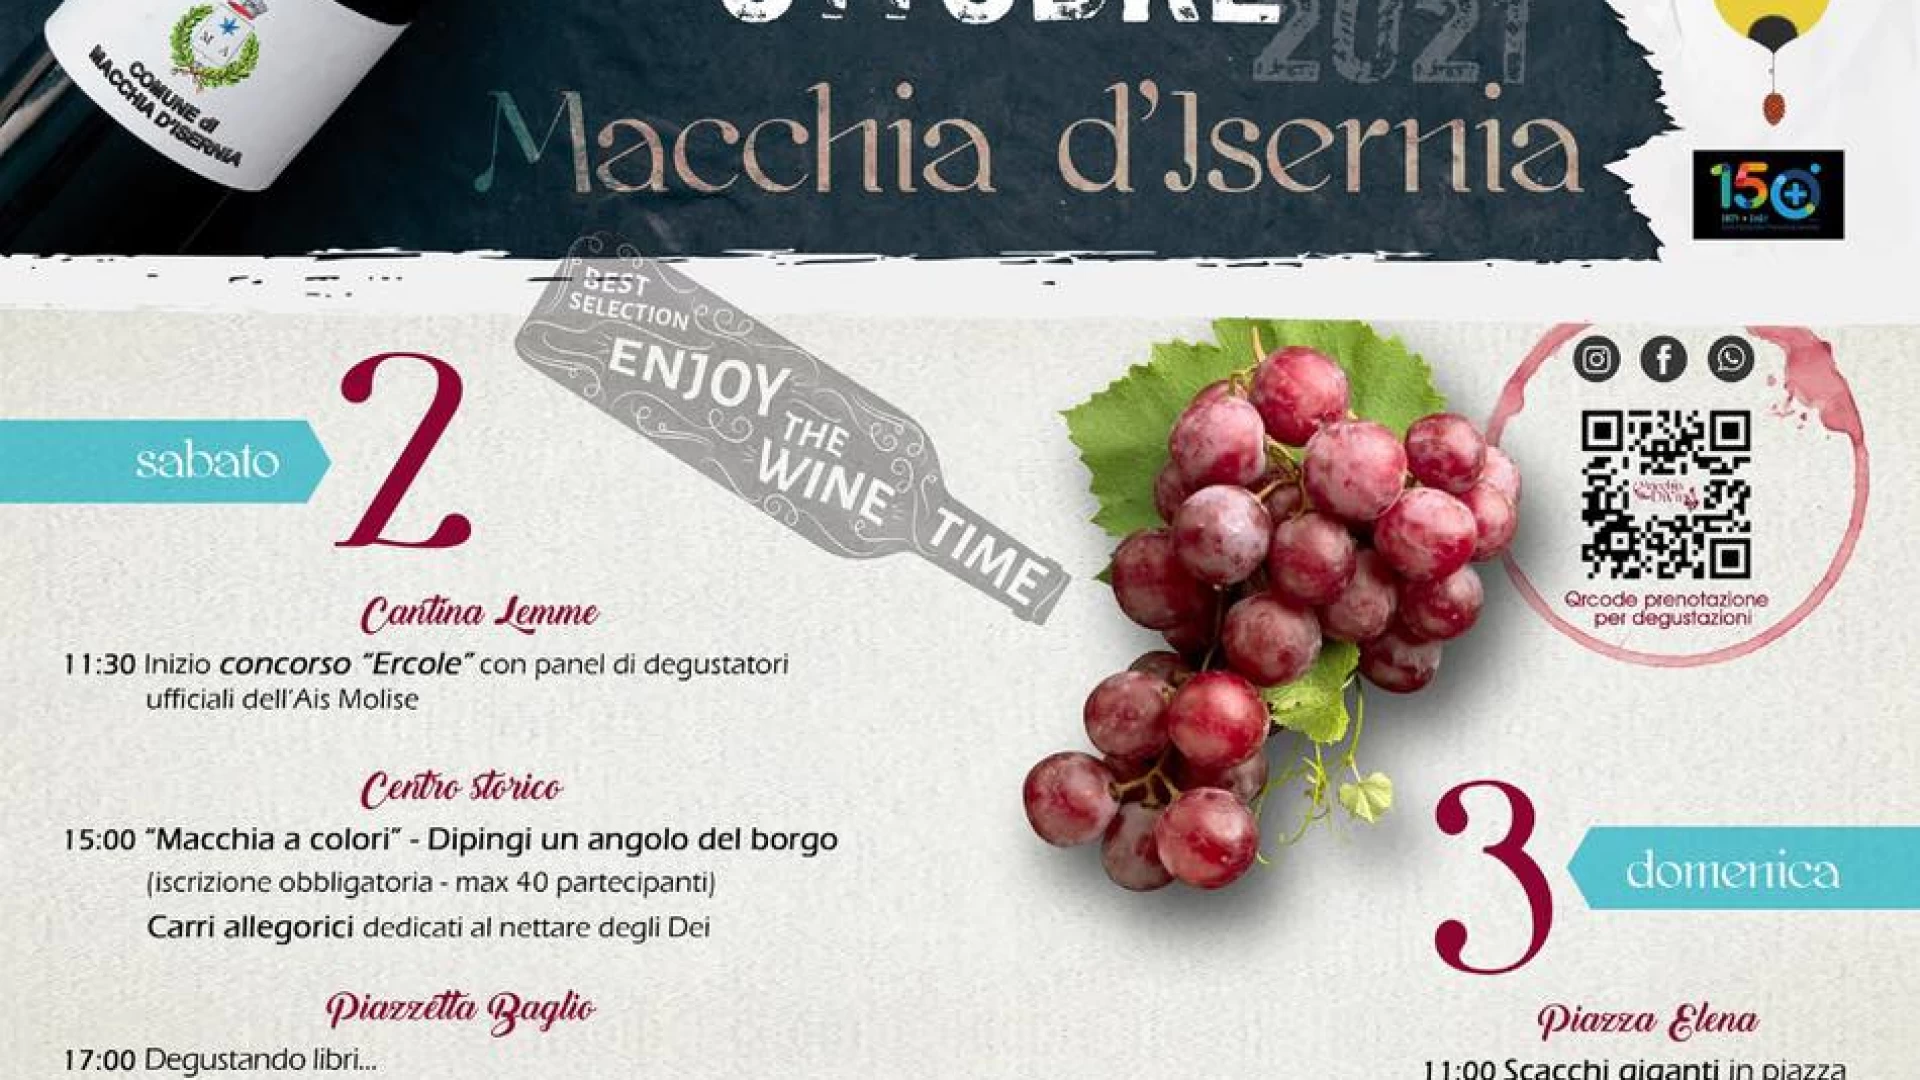 Macchia di Vino: nel fine settimana a Macchia d’Isernia l’esaltazione del vino e dei sapori. Il programma completo.